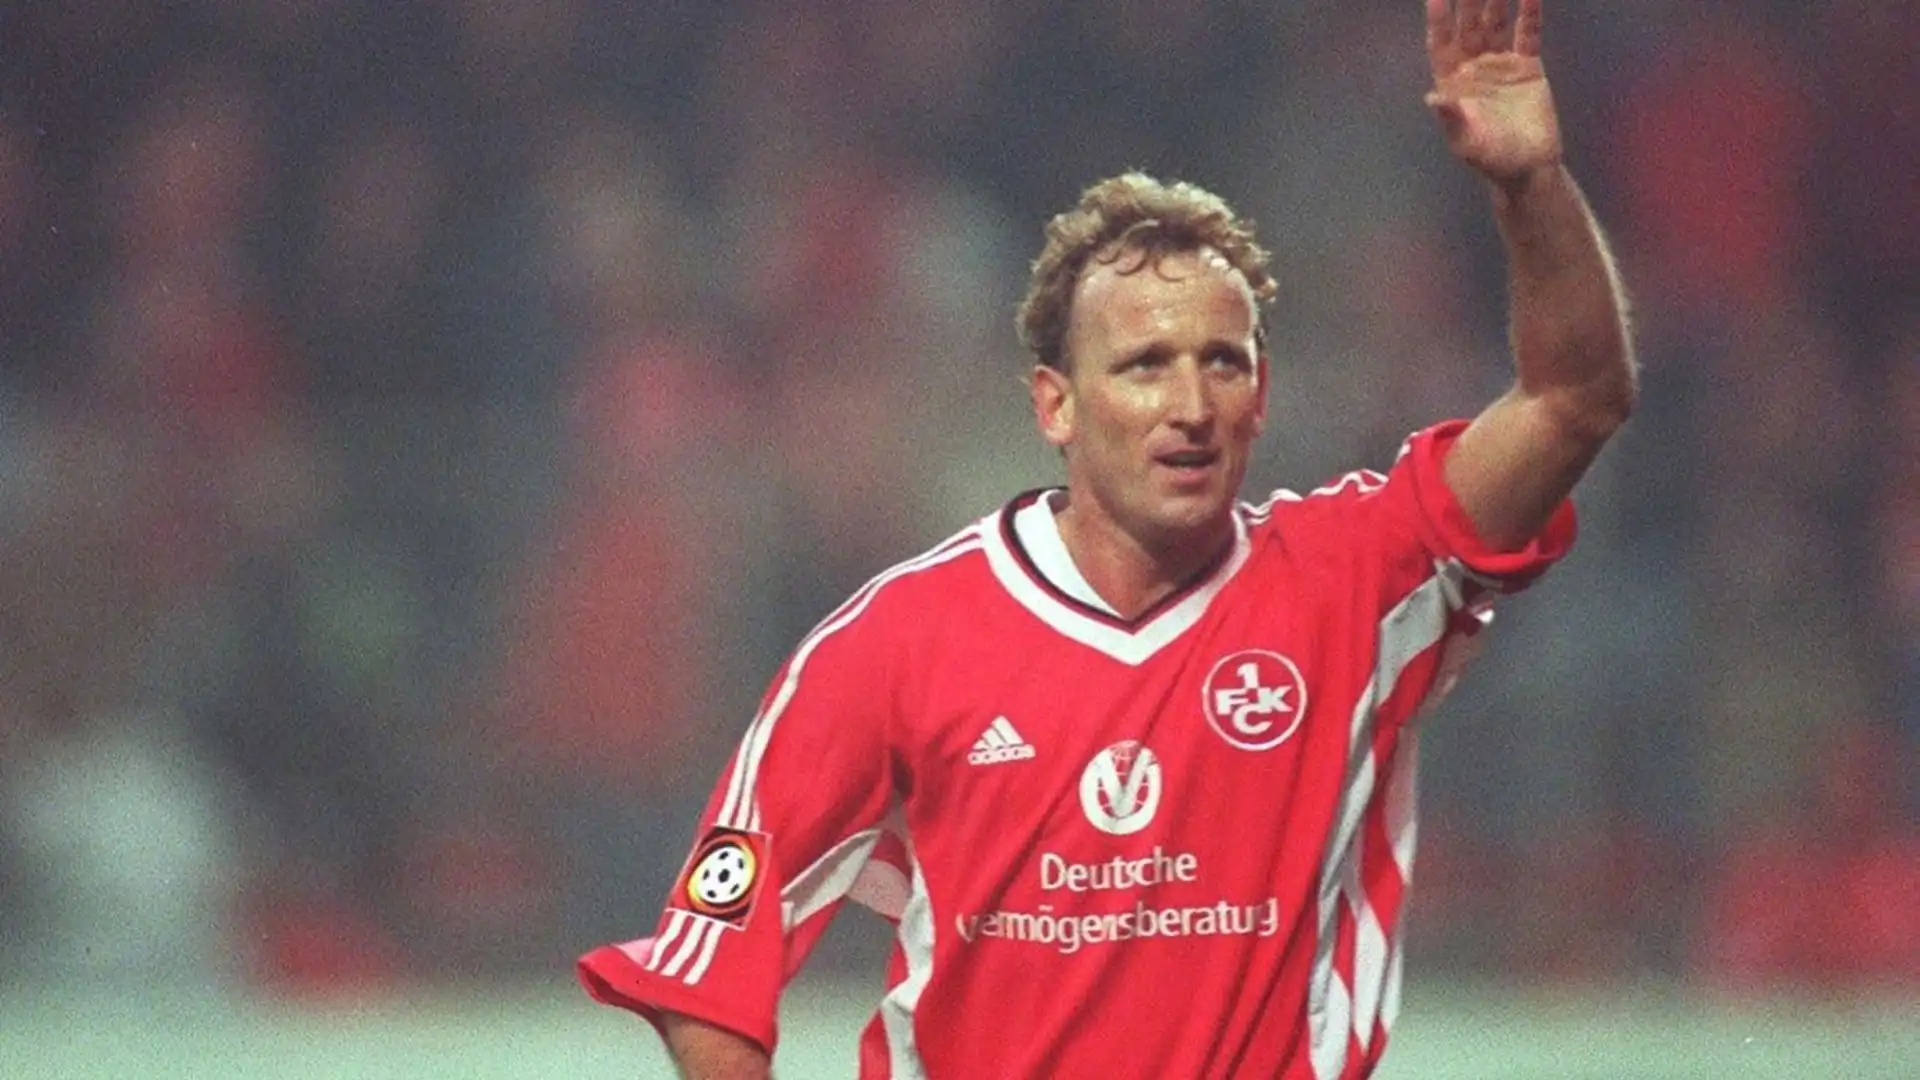 Dopo l'Inter gioca nel Real Saragozza, prima di concludere la carriera al Kaiserslautern nel 1998